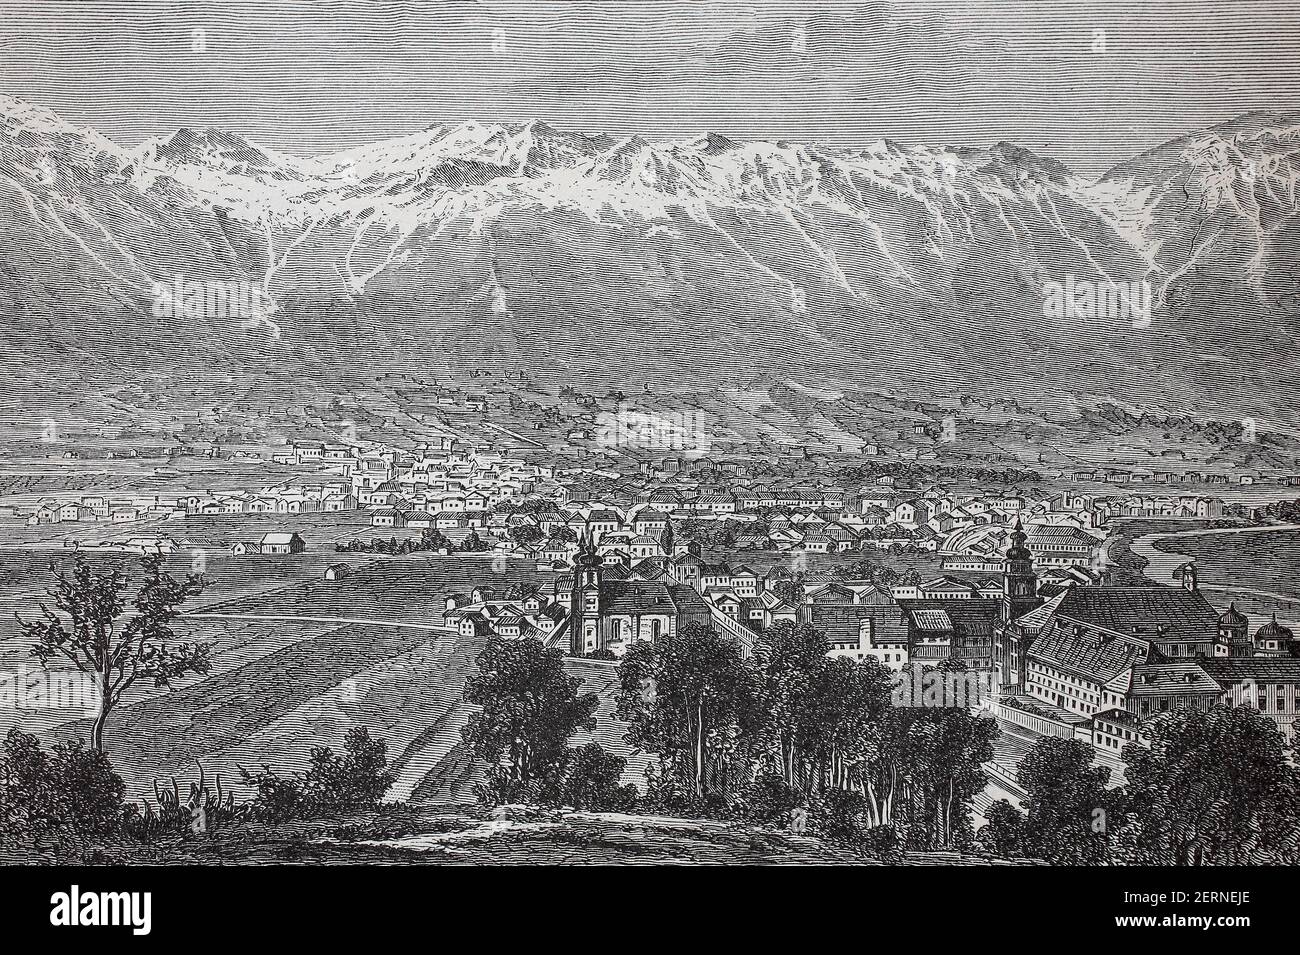 The city of Innsbruck, Austria, in the year 1880  /  Die Stadt Innsbruck in oesterreich, im Jahre 1880, Historisch, historical, digital improved repro Stock Photo